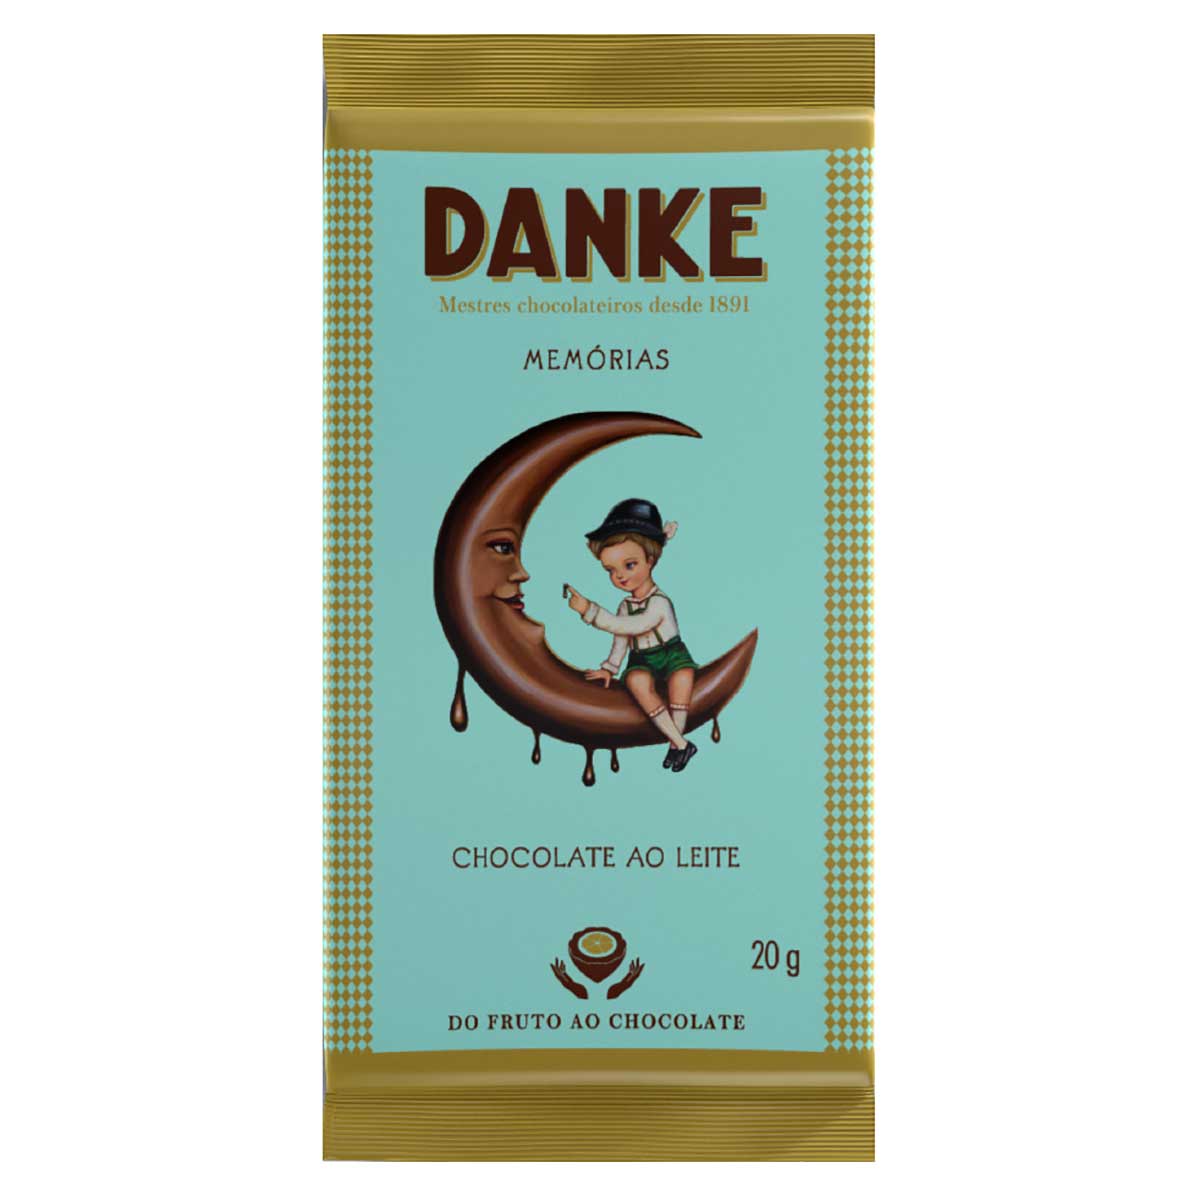 chocolate-ao-leite-danke-memorias-20-g-1.jpg